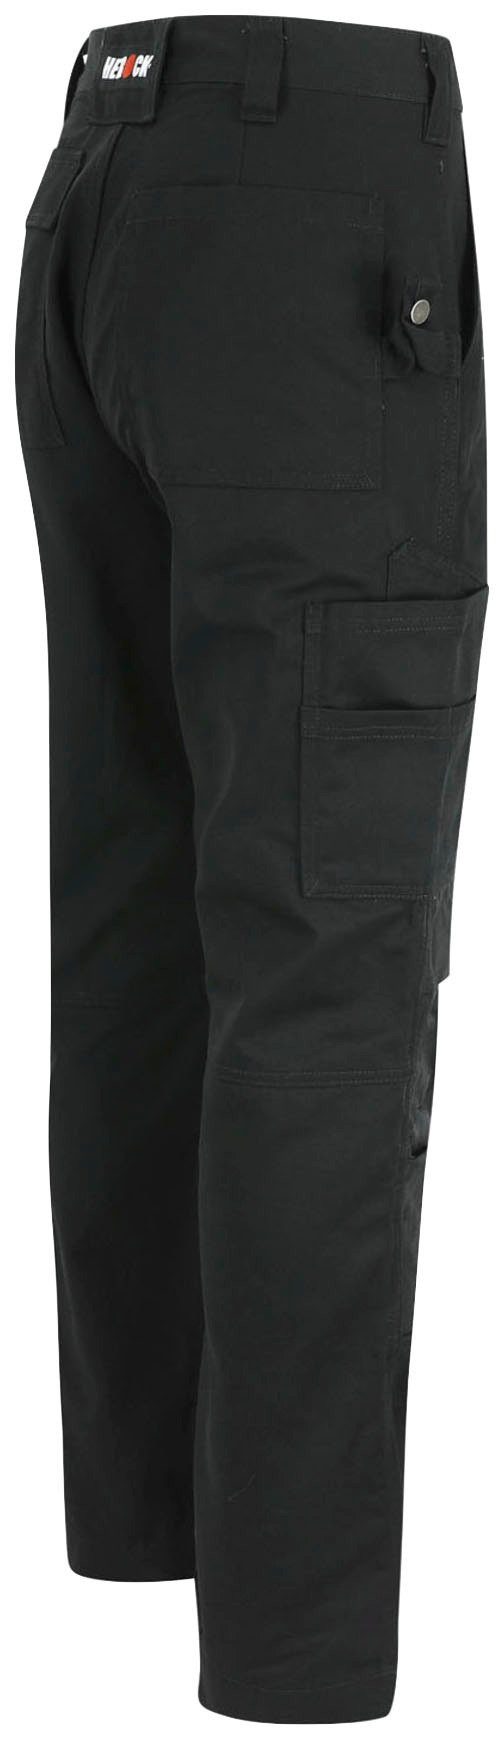 Herock Arbeitshose TITAN Taschen, wasserabweisend, sehr Kurzgröβe, 3-Naht, HOSE 12 SHORTLEG schwarz angenehm